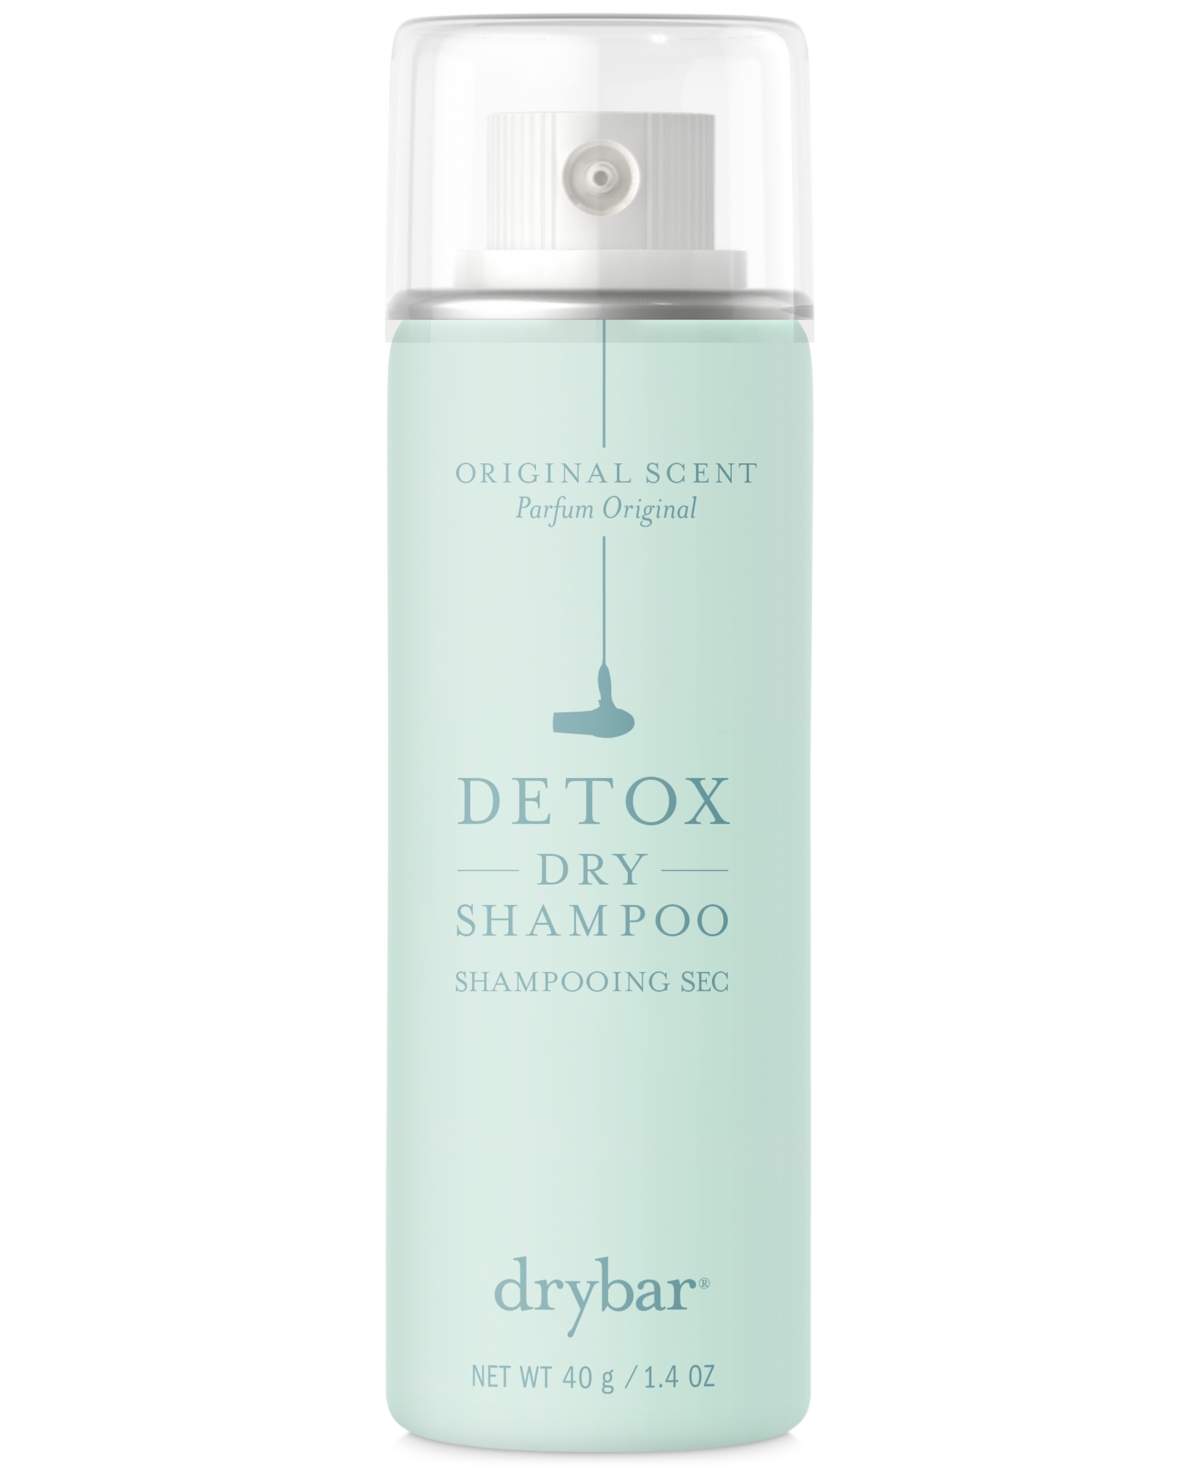 Detox Dry Shampoo - Original Scent, 1.4-oz.